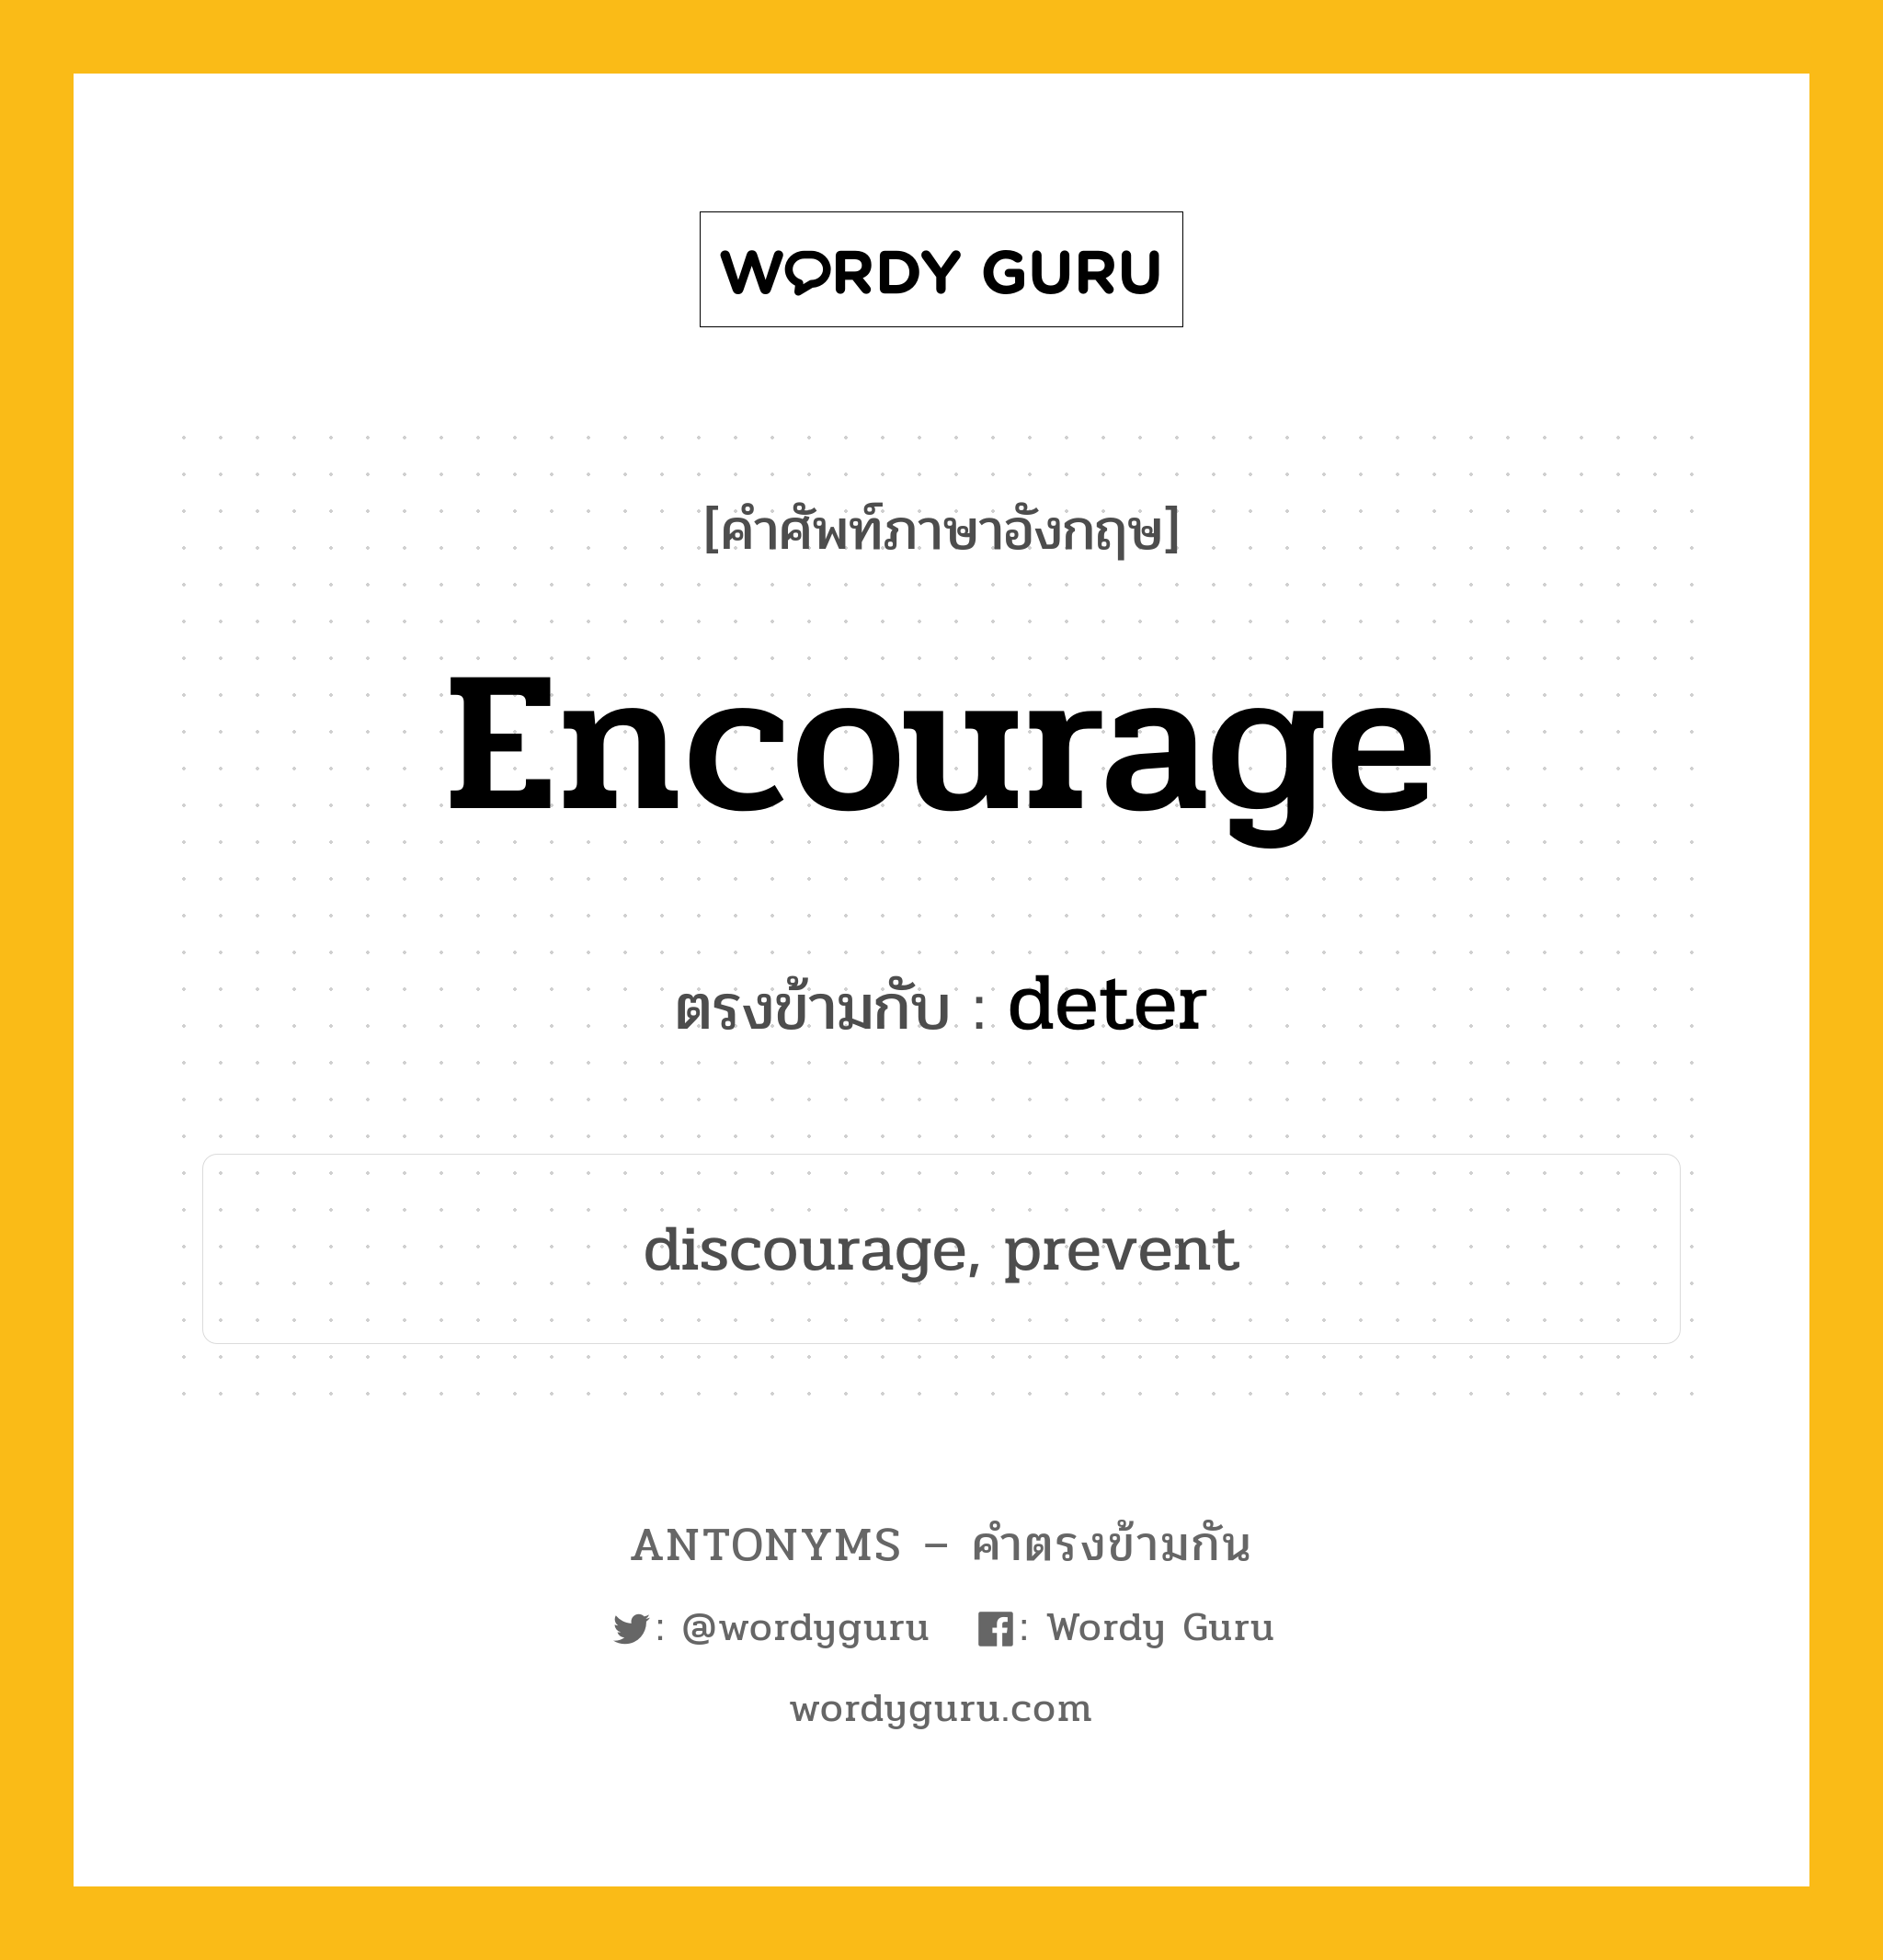 encourage เป็นคำตรงข้ามกับคำไหนบ้าง?, คำศัพท์ภาษาอังกฤษ encourage ตรงข้ามกับ deter หมวด deter